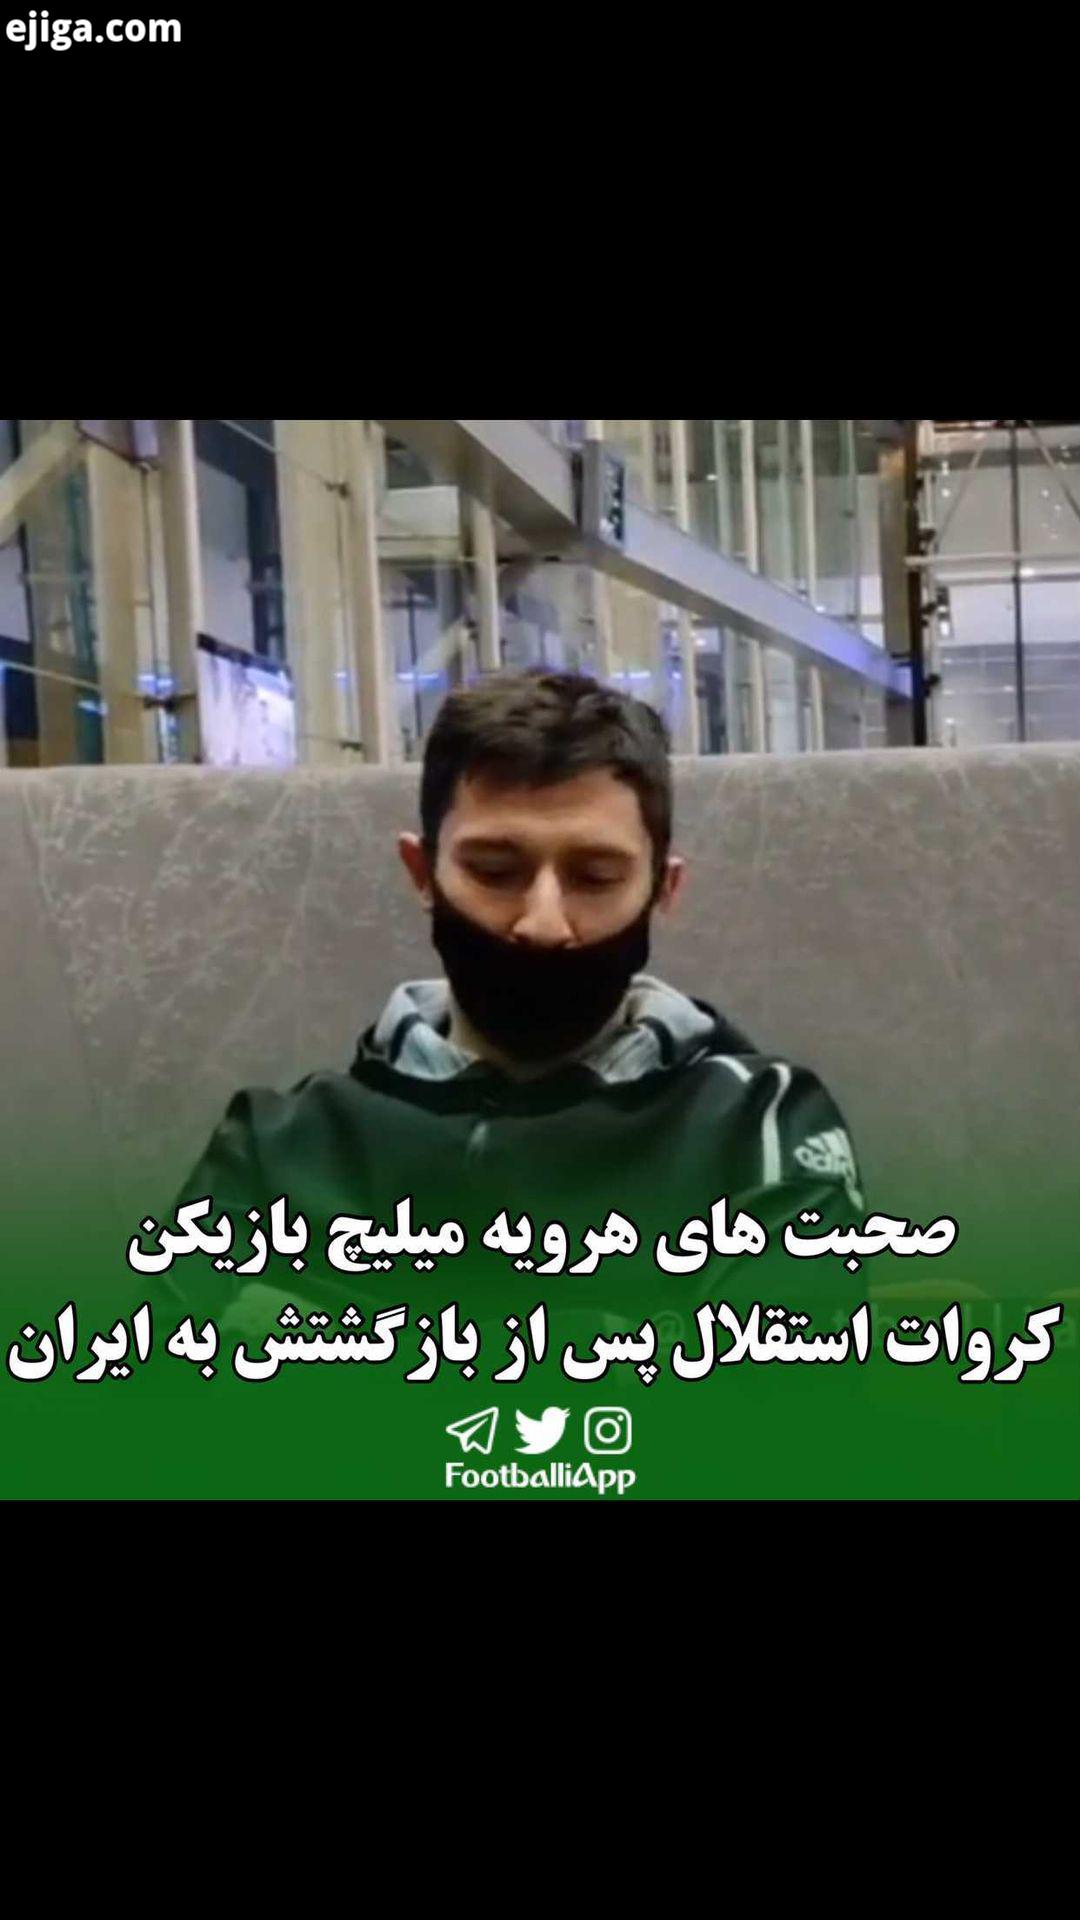 گفت گوی اختصاصی سالار علیخواه گزارشگر اعزامی فوتبالی به فرودگاه امام خمینی ره با هروه میلیچ بازیکن